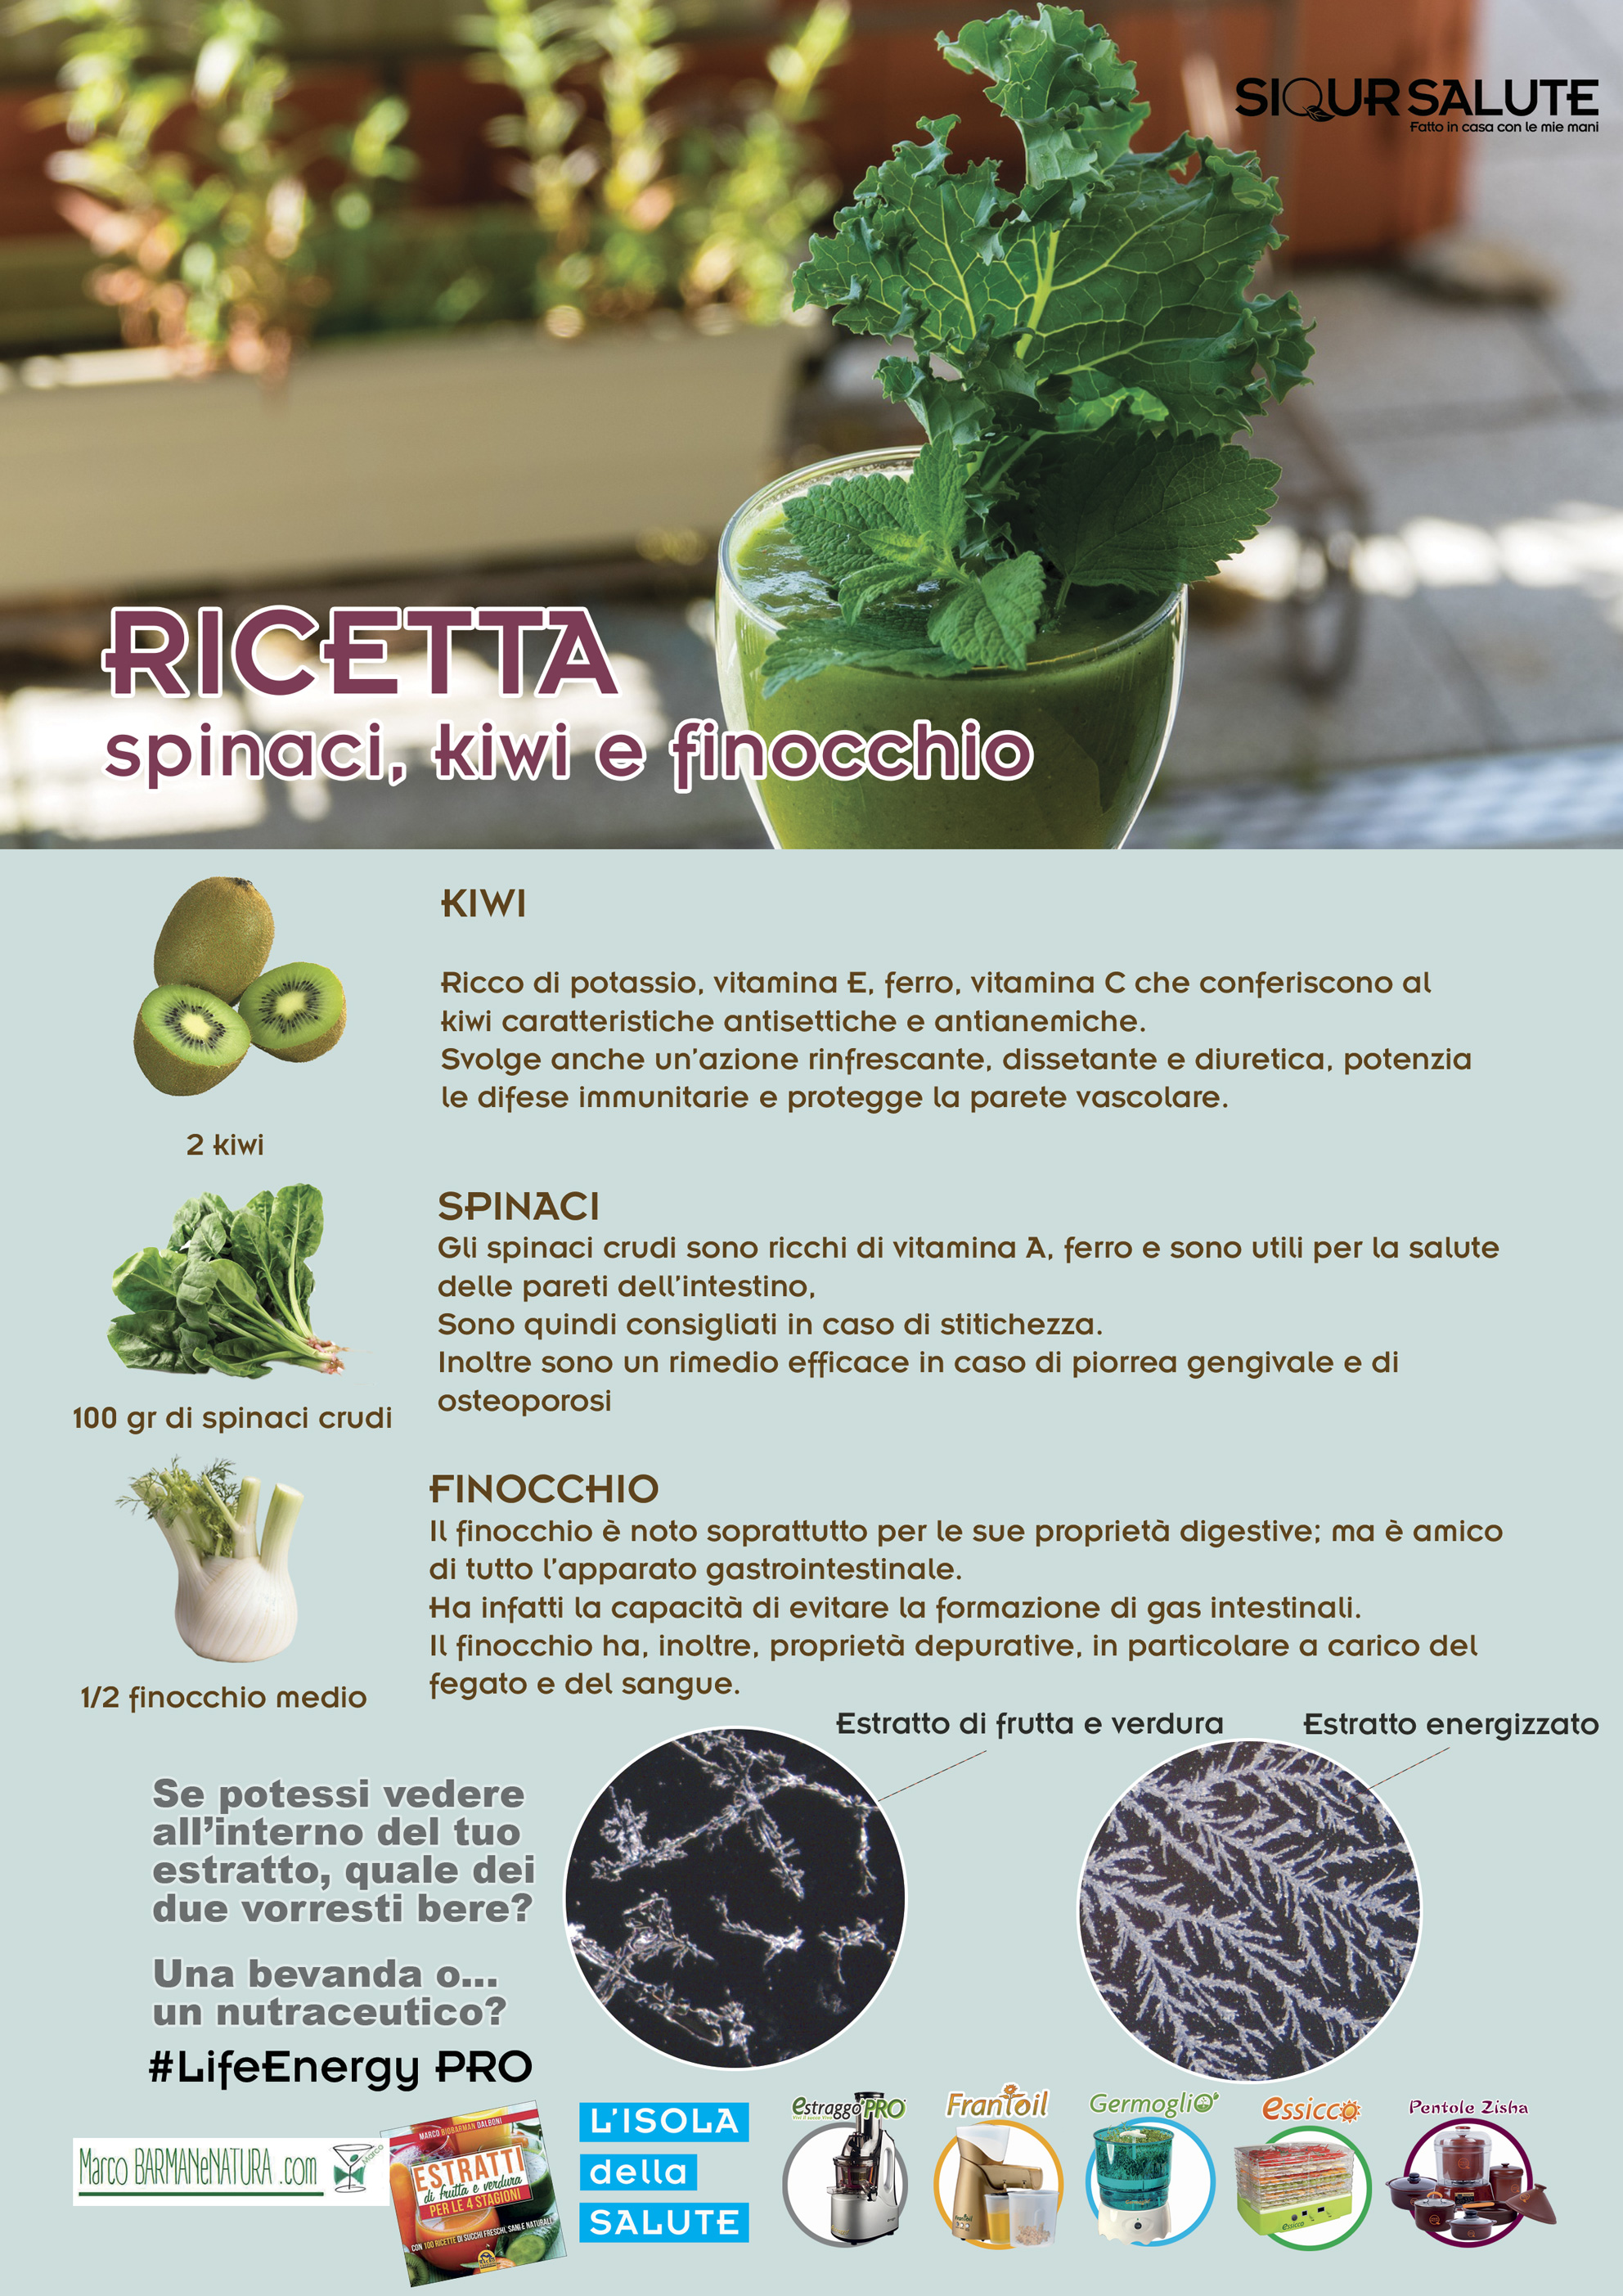 Ricetta di spinaci